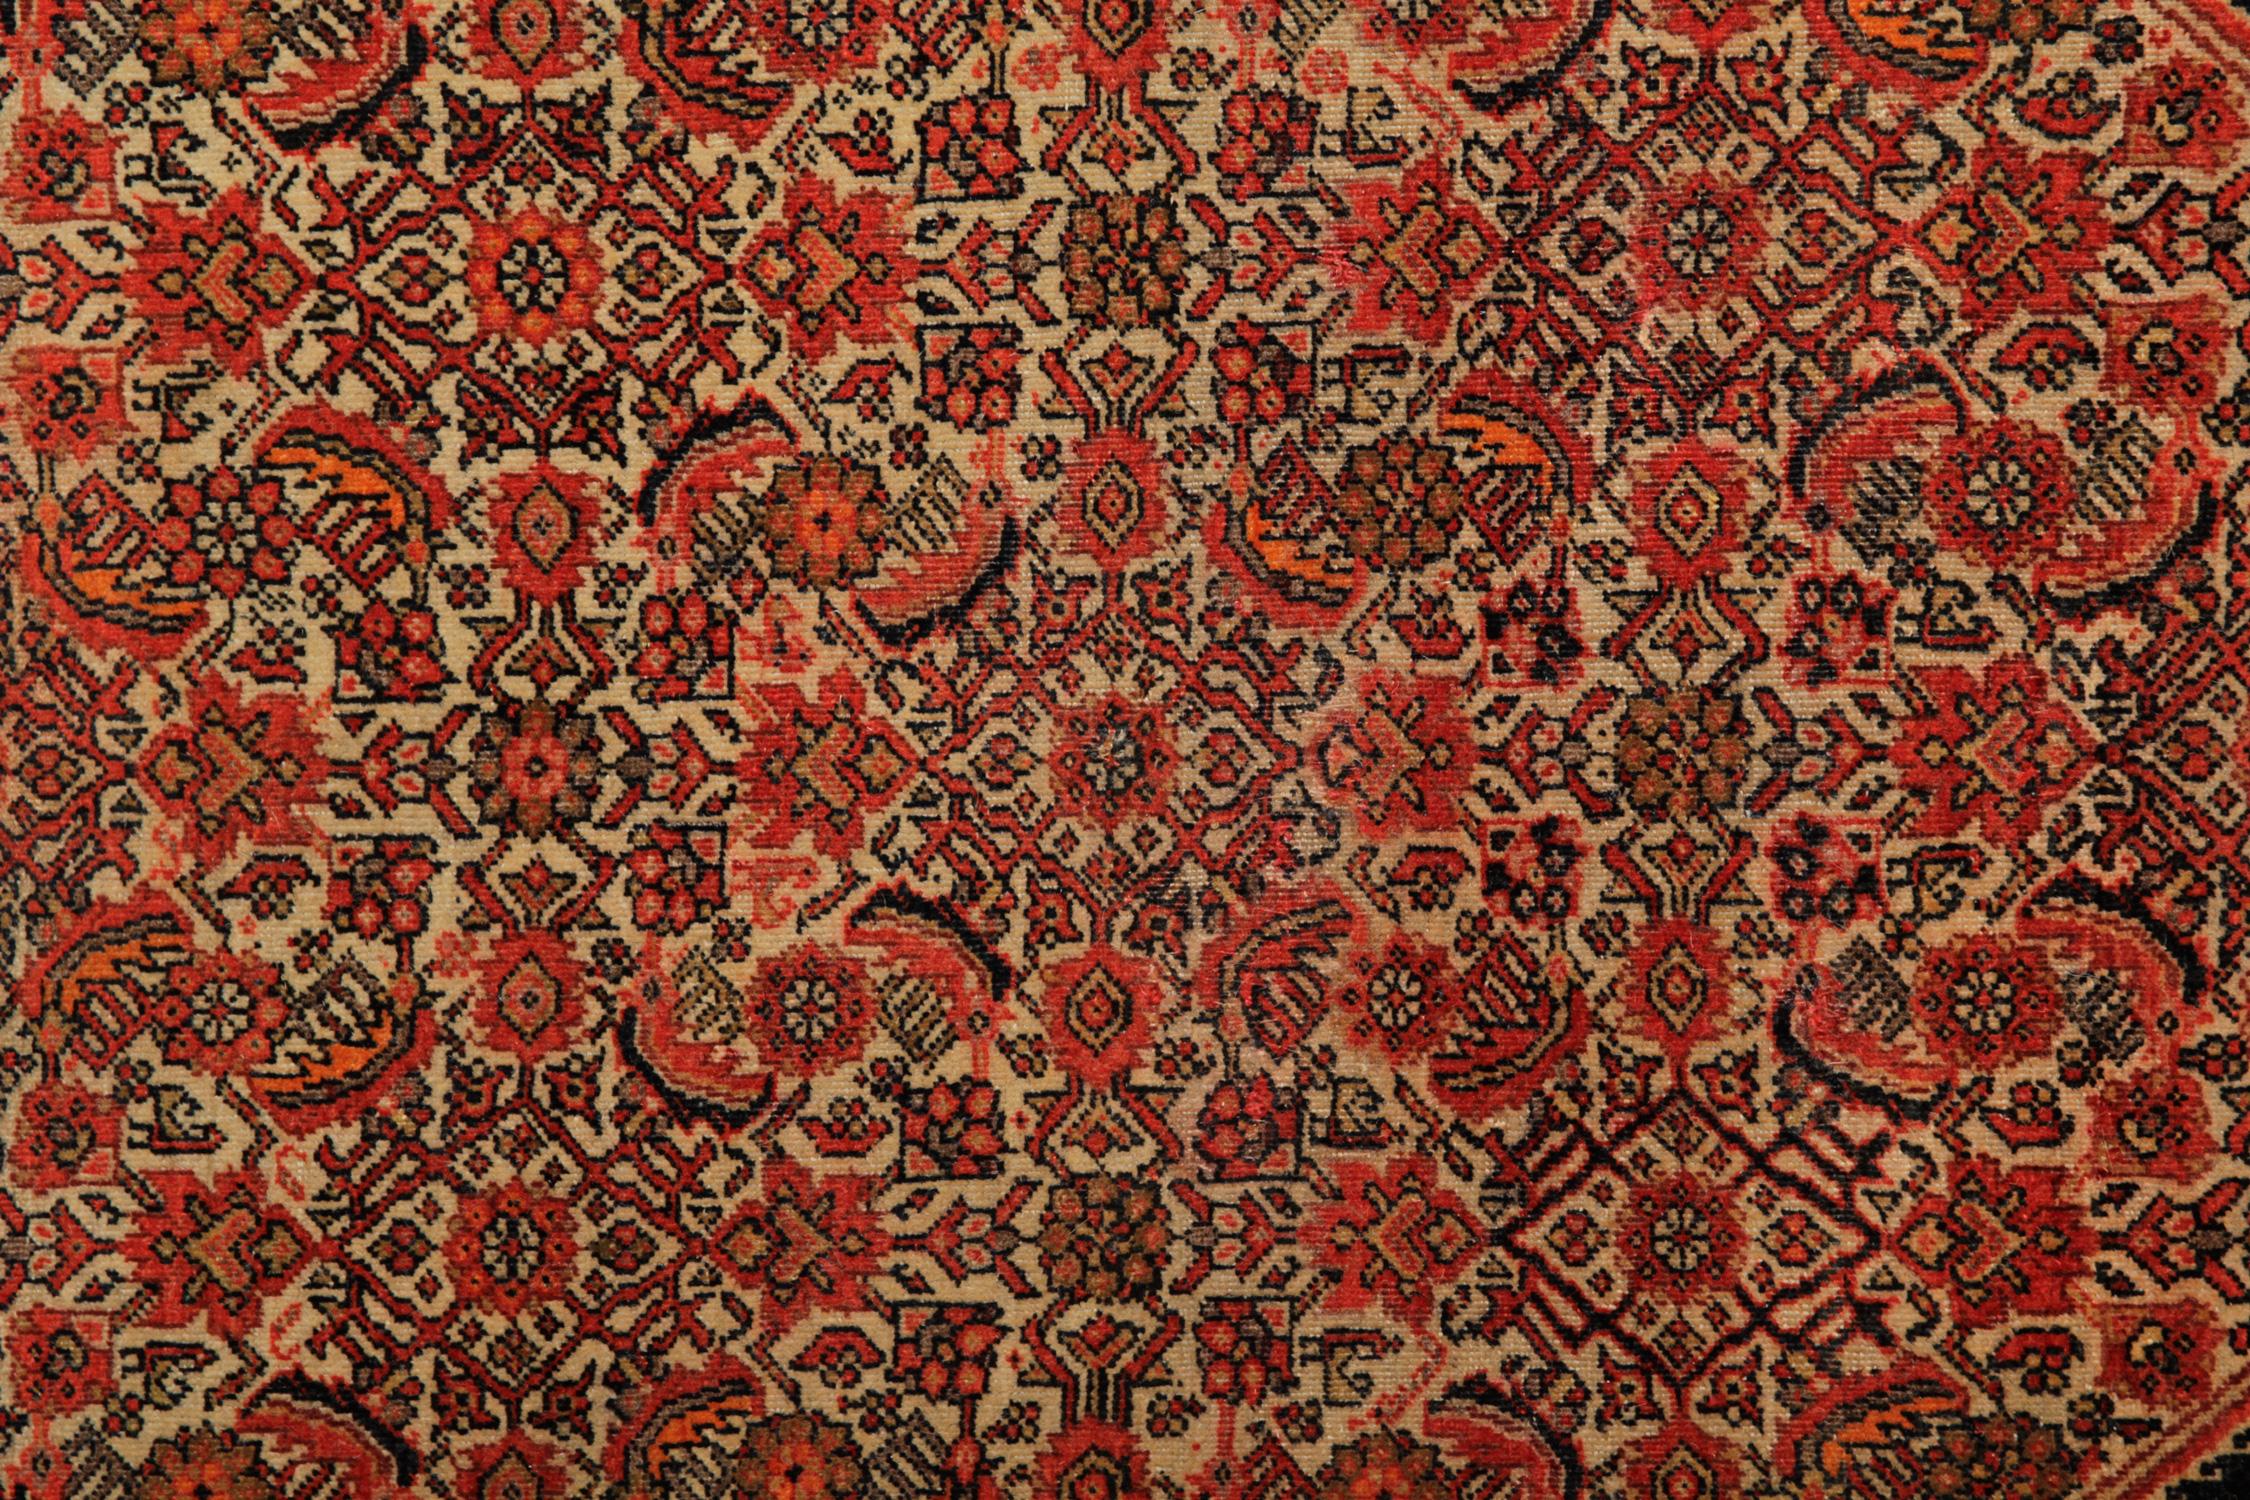 Dieser antike Teppich zeichnet sich durch ein einzigartiges All-Over-Muster aus, bei dem eine kühne schwarze Linie ein Trio von Diamanten in der Mitte umreißt. Der Hintergrund ist cremefarben mit orangefarbenen, braunen, rostfarbenen und roten